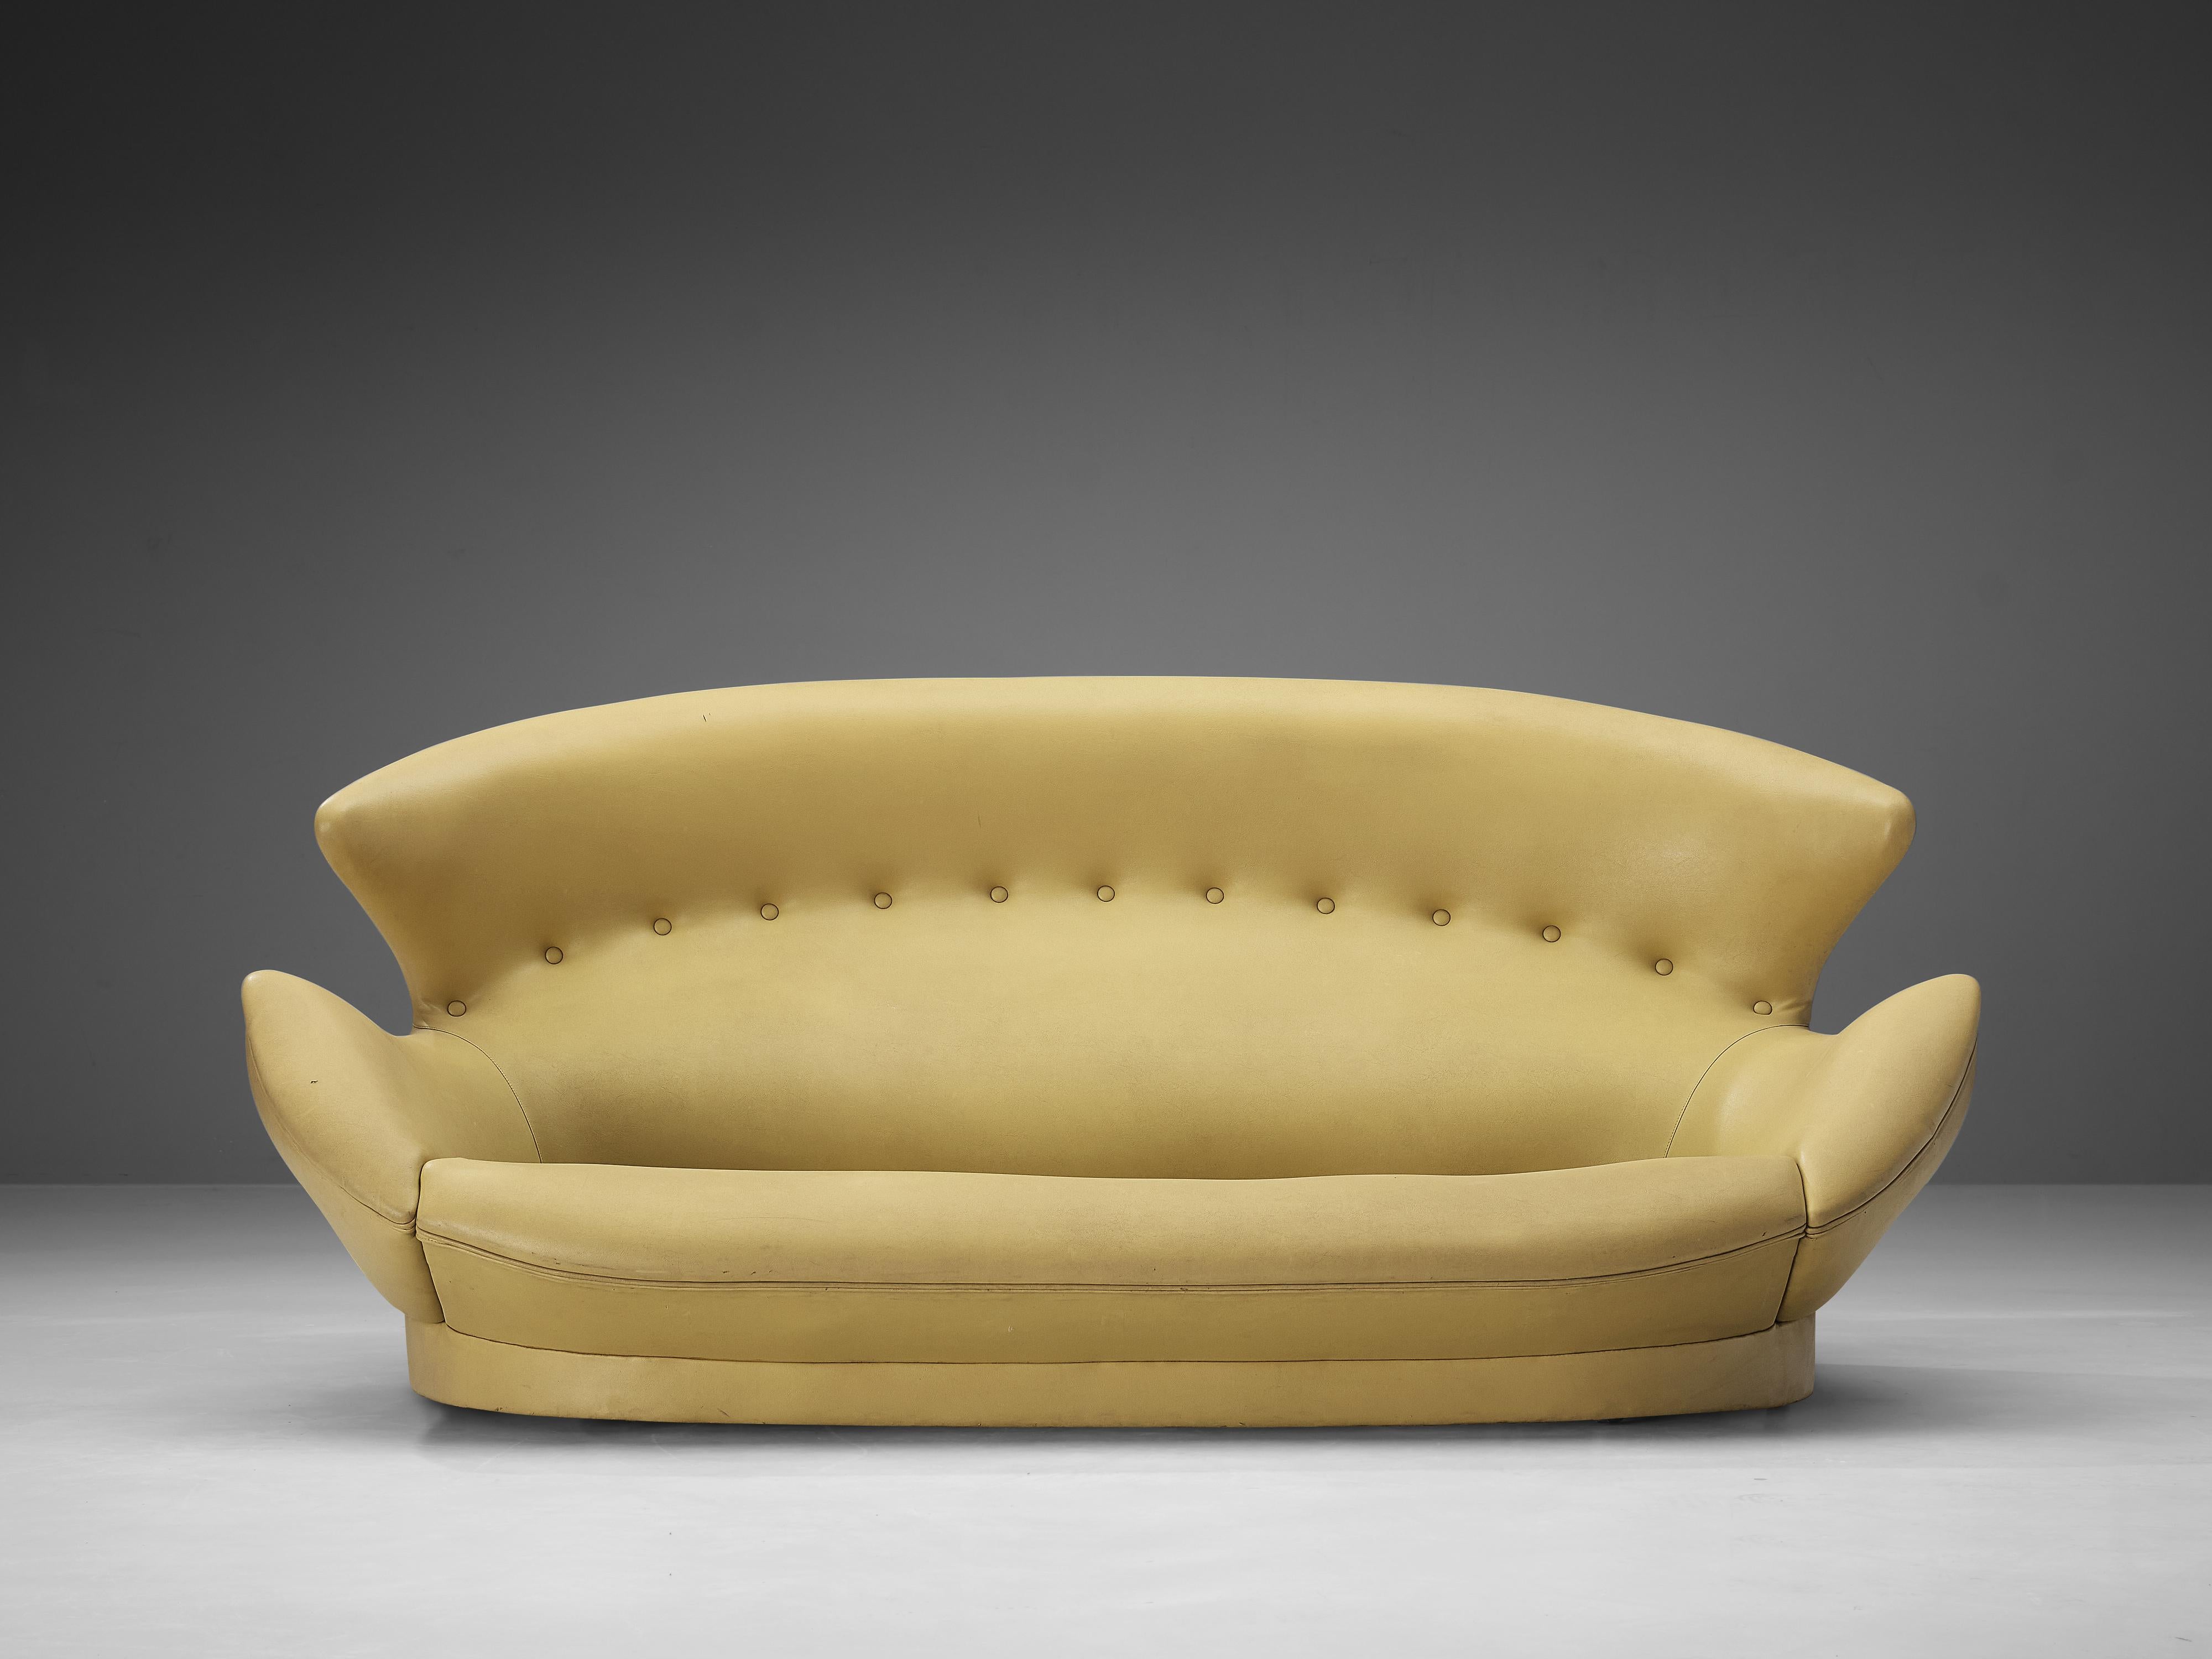 Sofa, Kunstleder, Italien, 1970er Jahre

Ein typisch italienisches Flügelsofa, gepolstert mit leuchtend gelbem Kunstleder. Sein abgerundetes Design mit den geflügelten Seiten, die sich bis zu den Armlehnen erstrecken, schafft ein gemütliches, fast